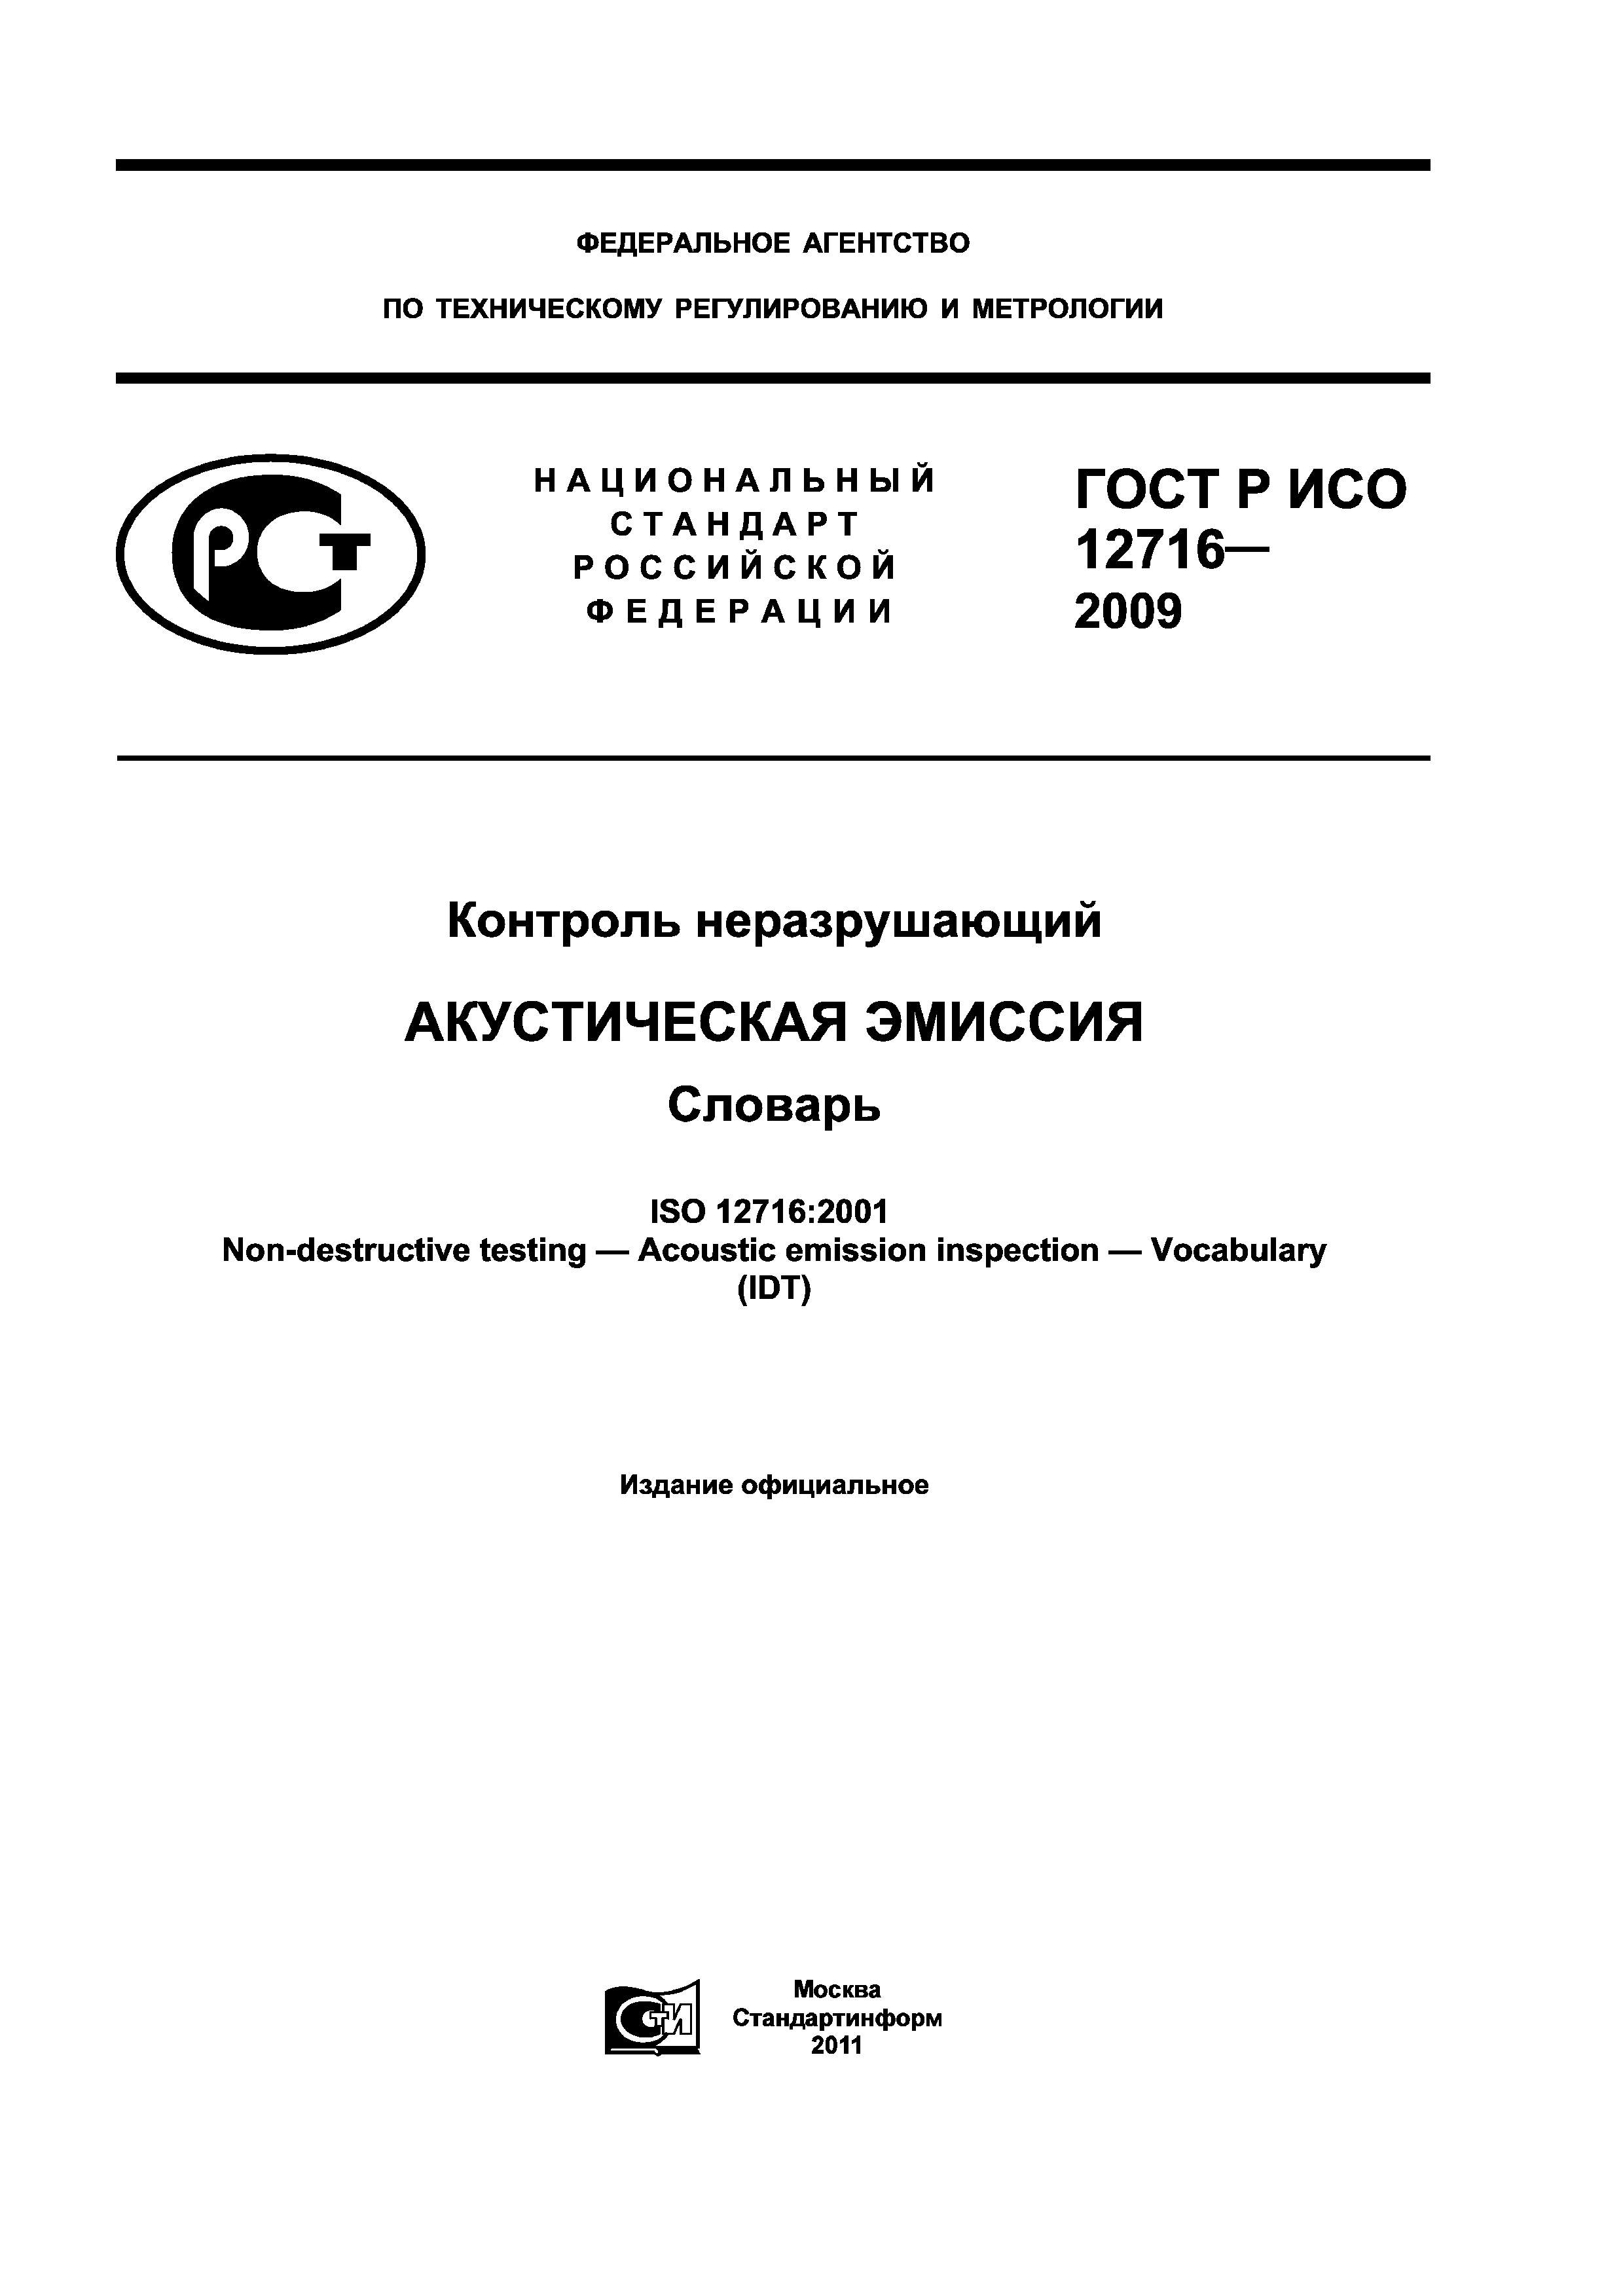 ГОСТ Р ИСО 12716-2009